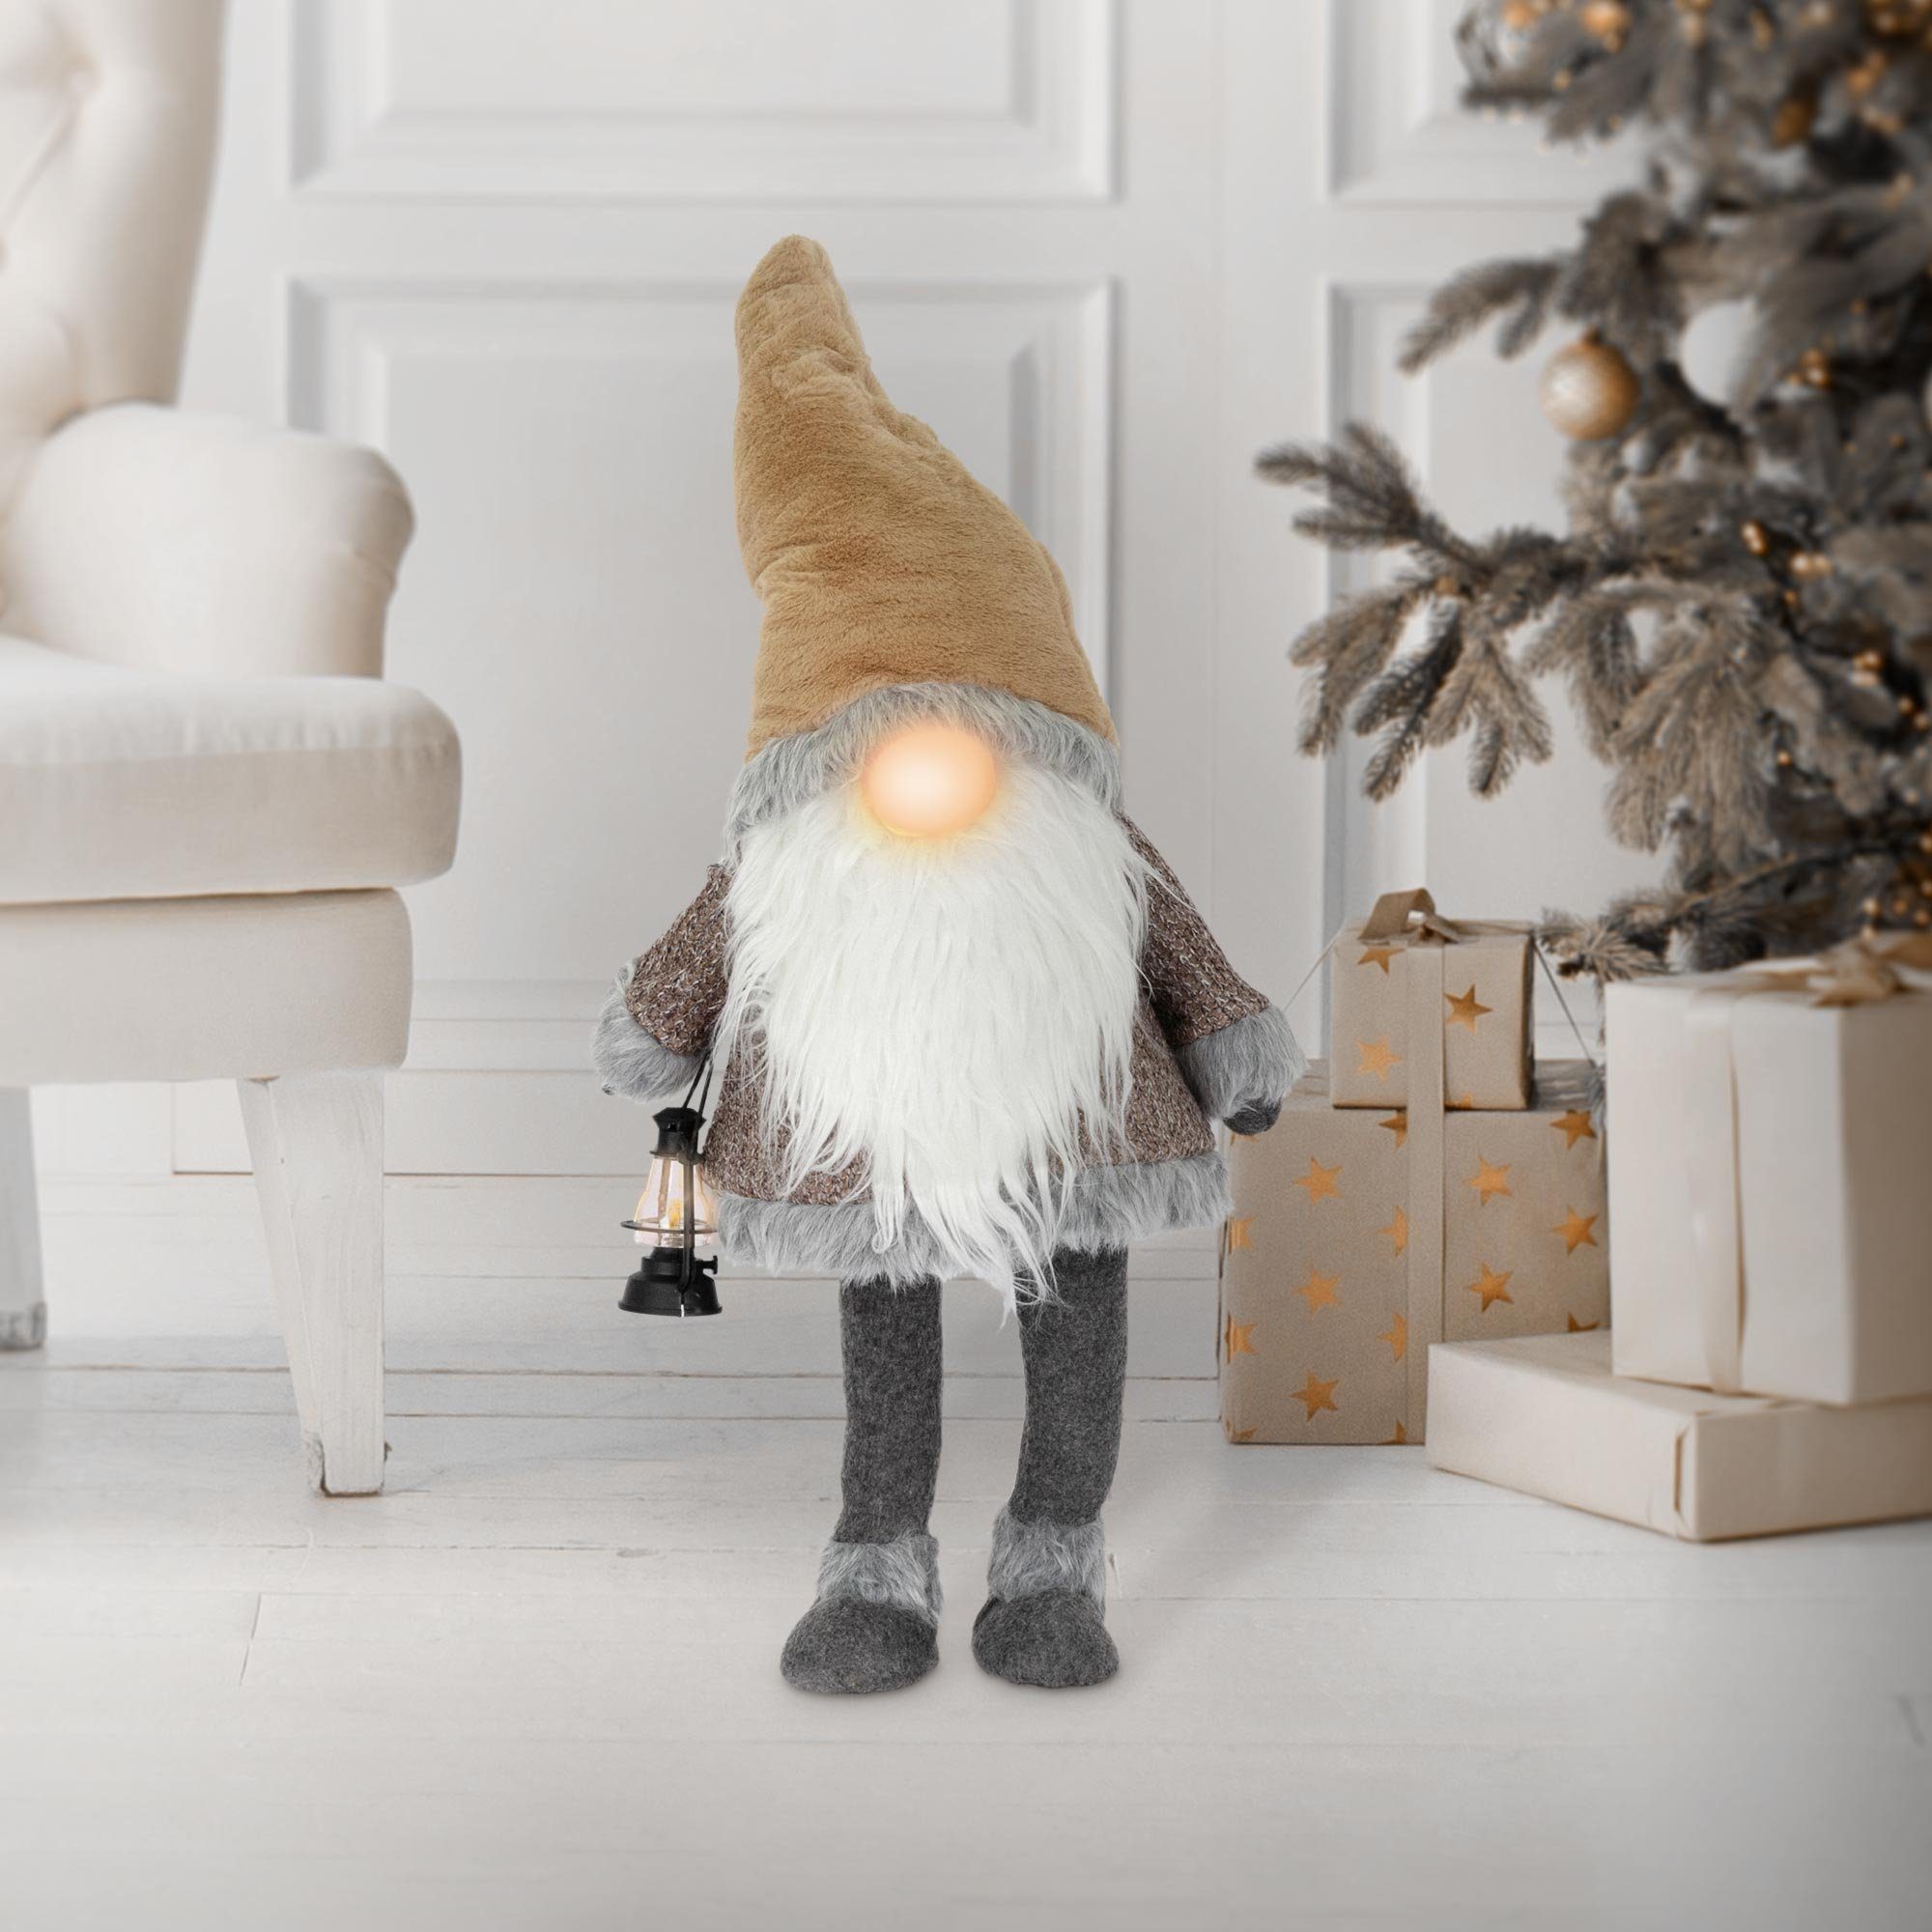 ECD Germany Weihnachtsfigur LED Wichtel-Figur Weihnachtsdeko  Weihnachtswichtel Weihnachtszwerg, Warmweiß beleuchtete Laterne und Nase  80cm Braun batteriebetrieben